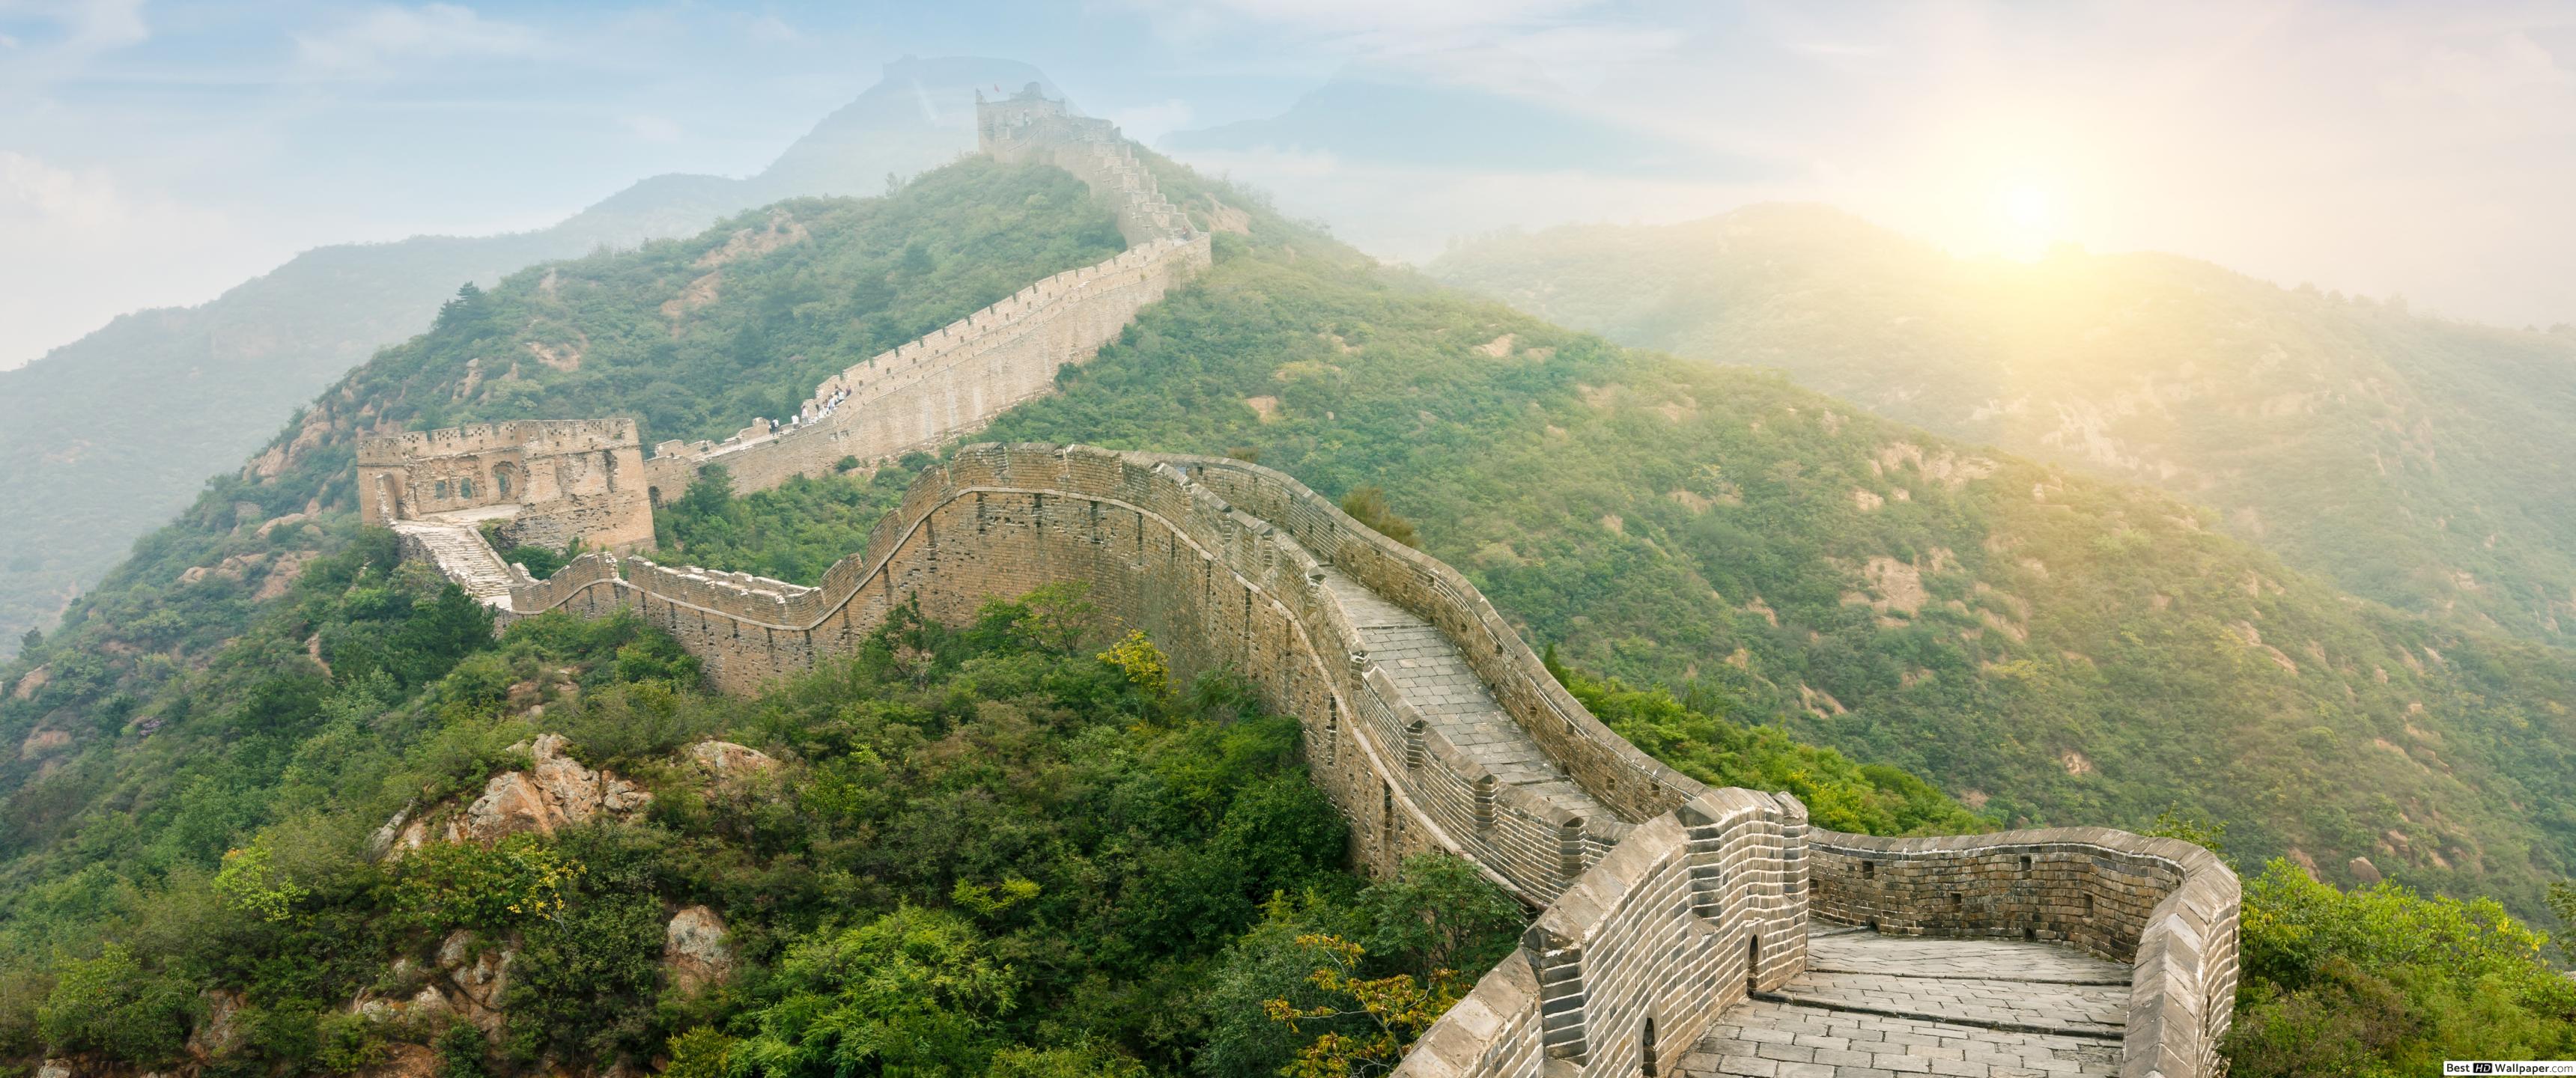 Great Wall Of China 600 X 800 - HD Wallpaper 